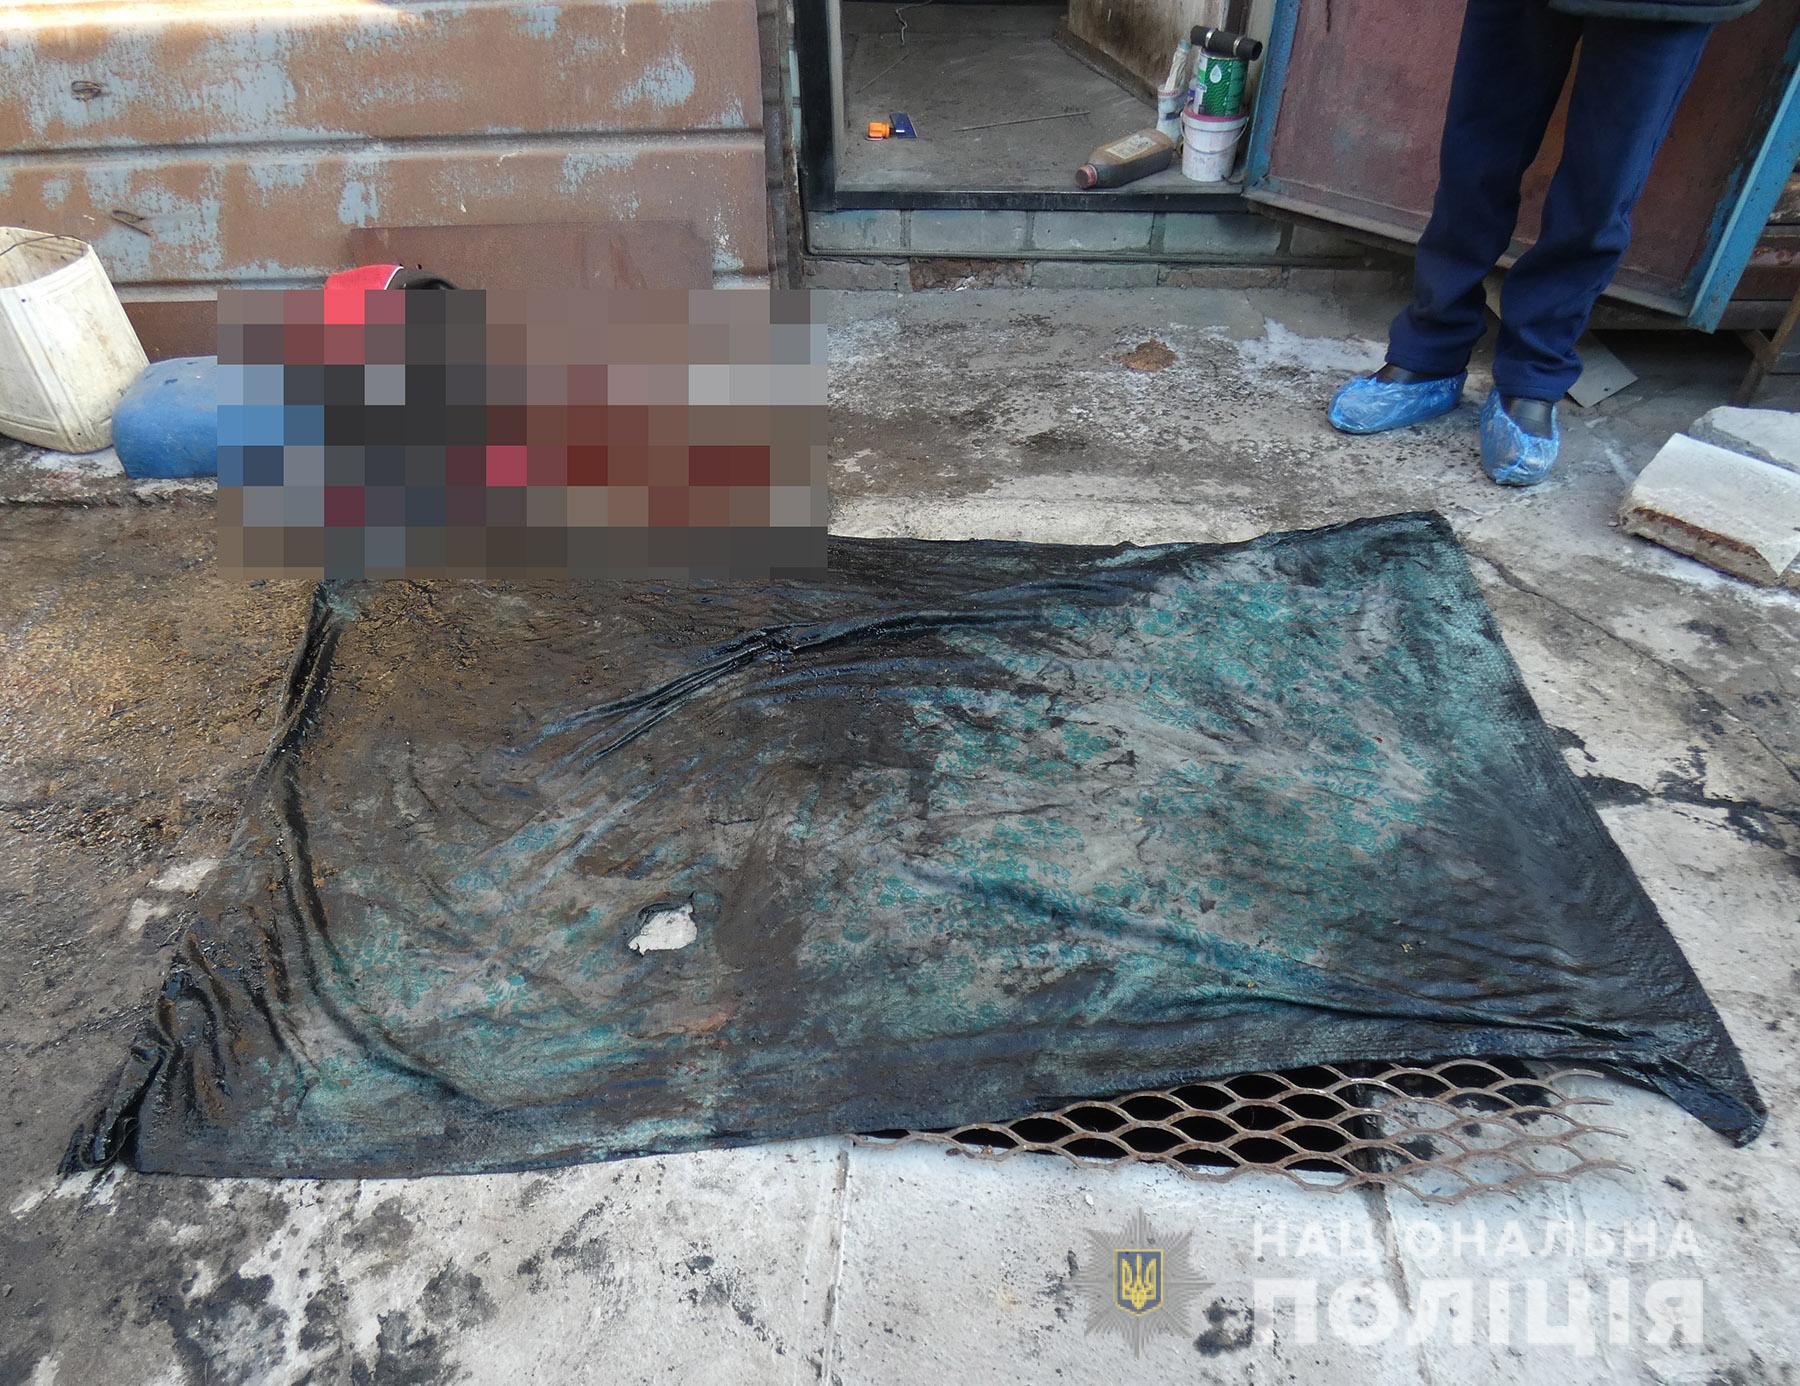 Убили строительным степлером: новые подробности спланированной расправы над мужчиной в Орехове